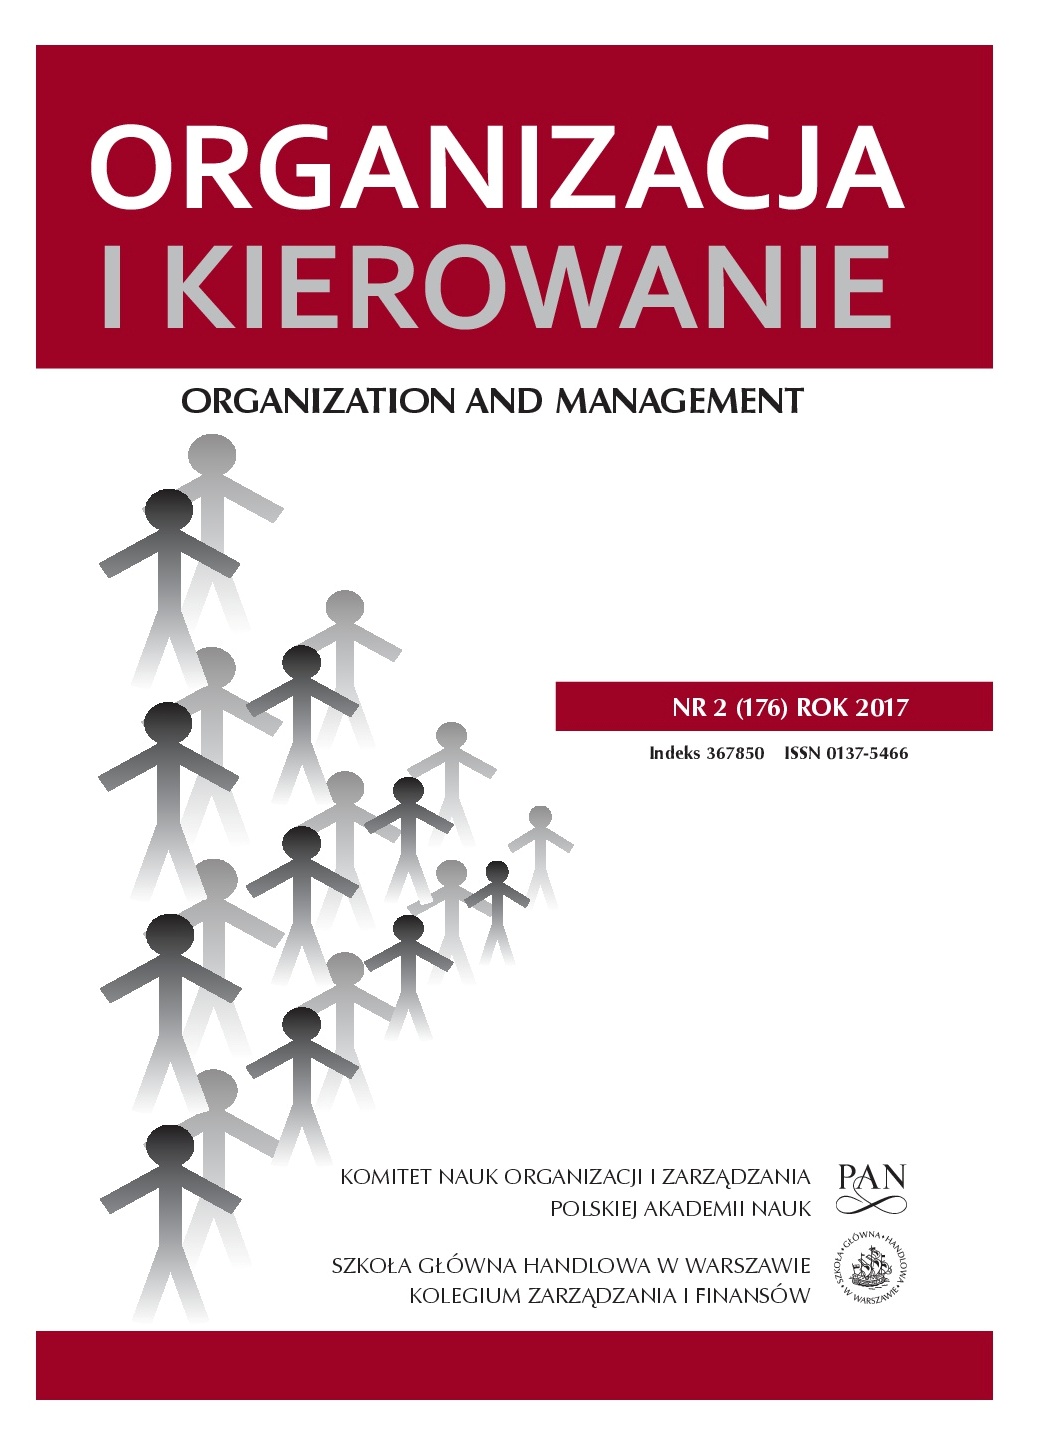 Struktura organizacyjna jako wsparcie dla procesu dzielenia się wiedzą w przedsiębiorstwie